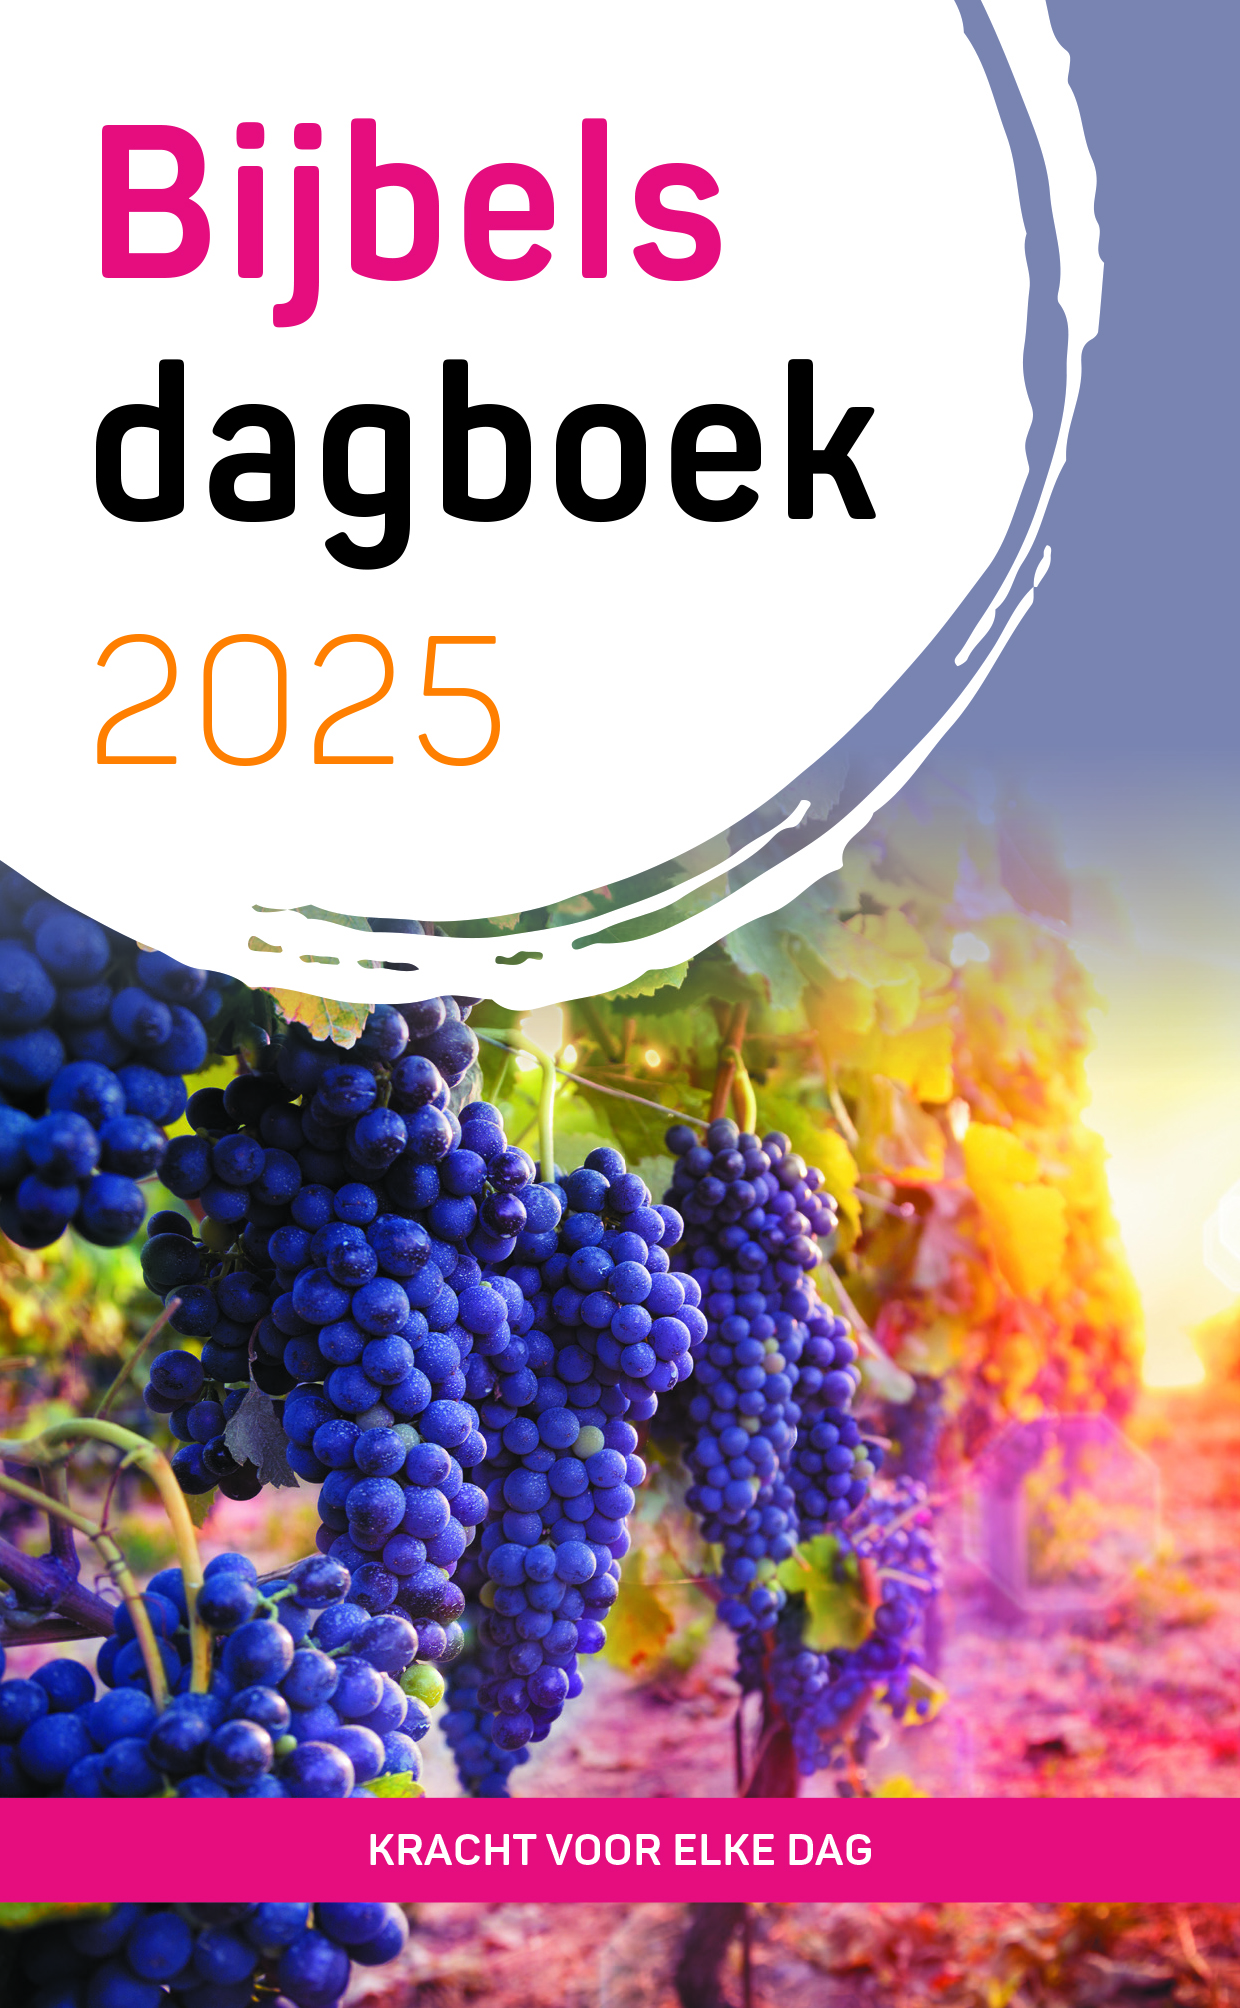 Bijbels dagboek 2025 (standaard formaat)